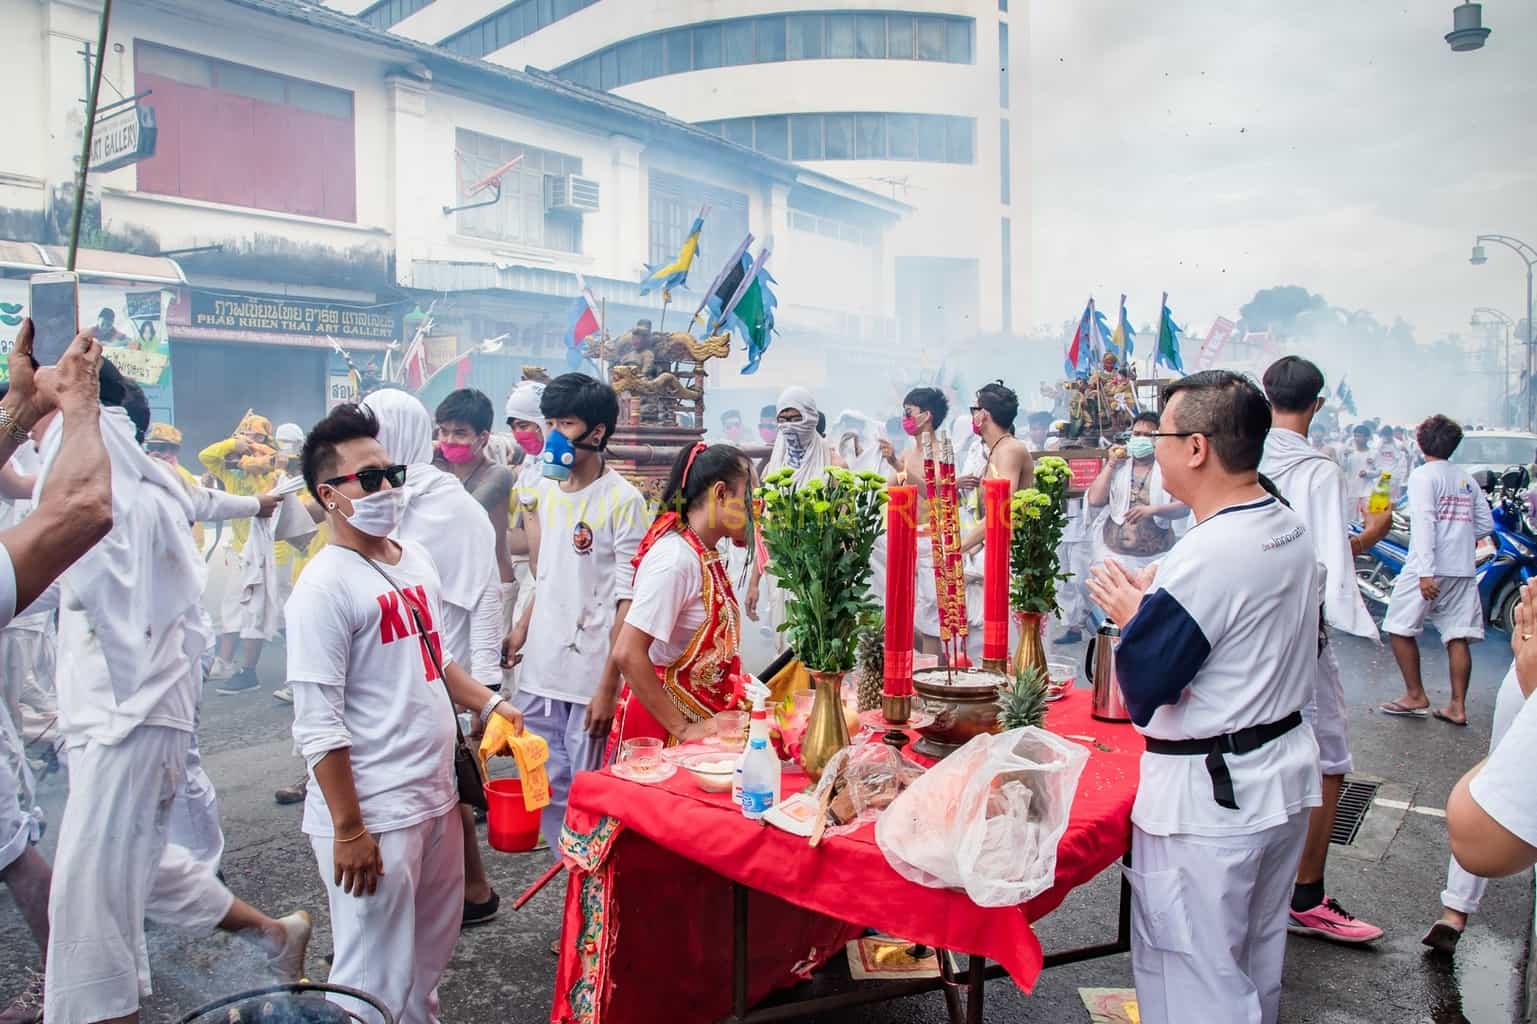 Vegetarian Festival Parade Wednesday in Phuket